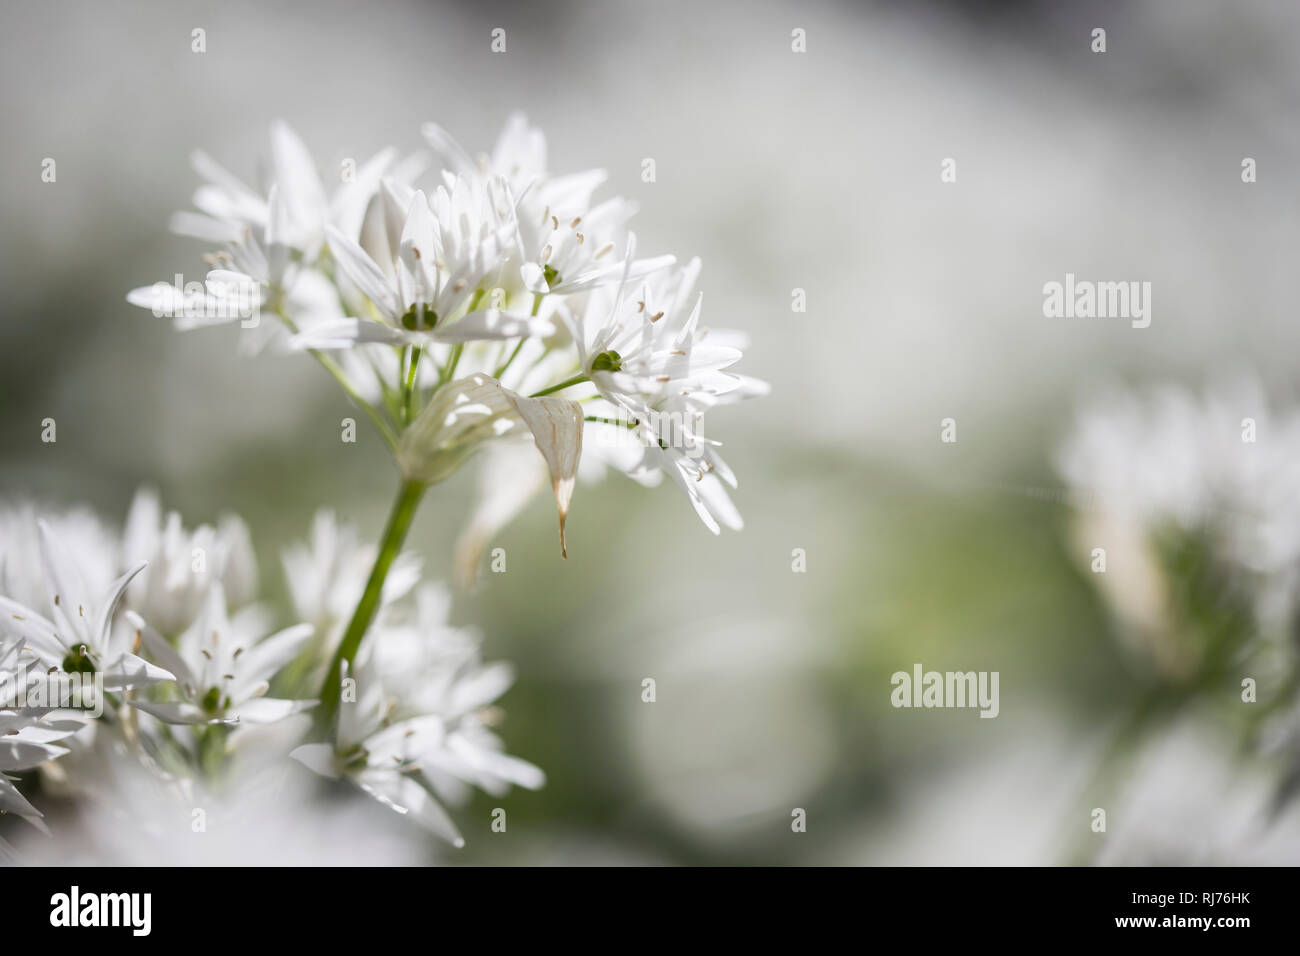 Bärlauch in voller Blüte, Allium ursinum, Nahaufnahme, Unschärfe, Gegenlicht, Stock Photo